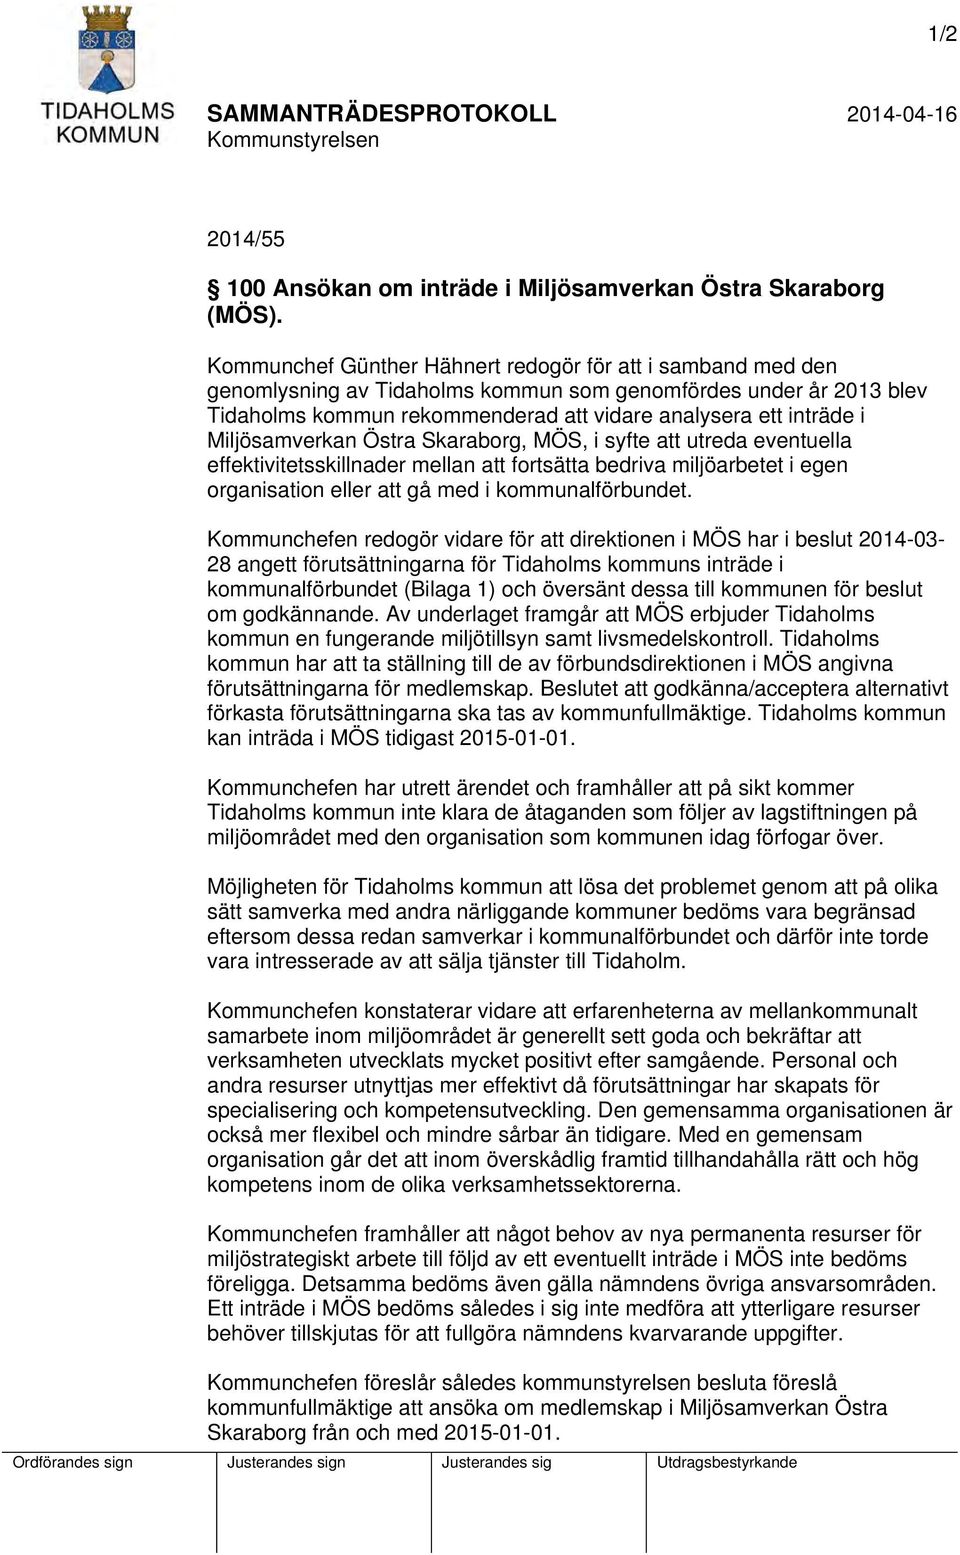 Miljösamverkan Östra Skaraborg, MÖS, i syfte att utreda eventuella effektivitetsskillnader mellan att fortsätta bedriva miljöarbetet i egen organisation eller att gå med i kommunalförbundet.